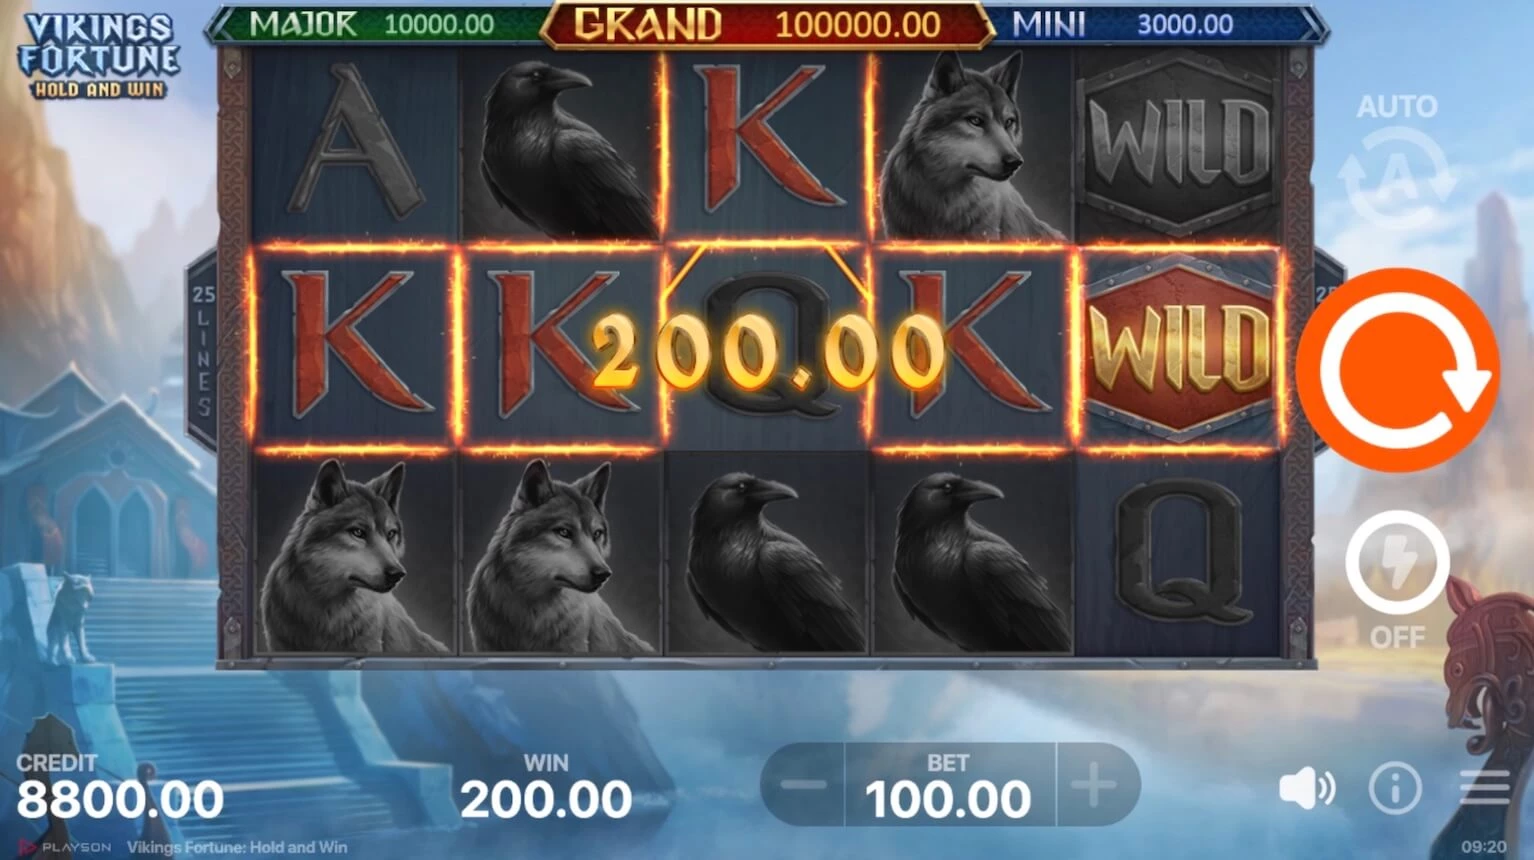 Vikings Fortune slot win 200 dollars